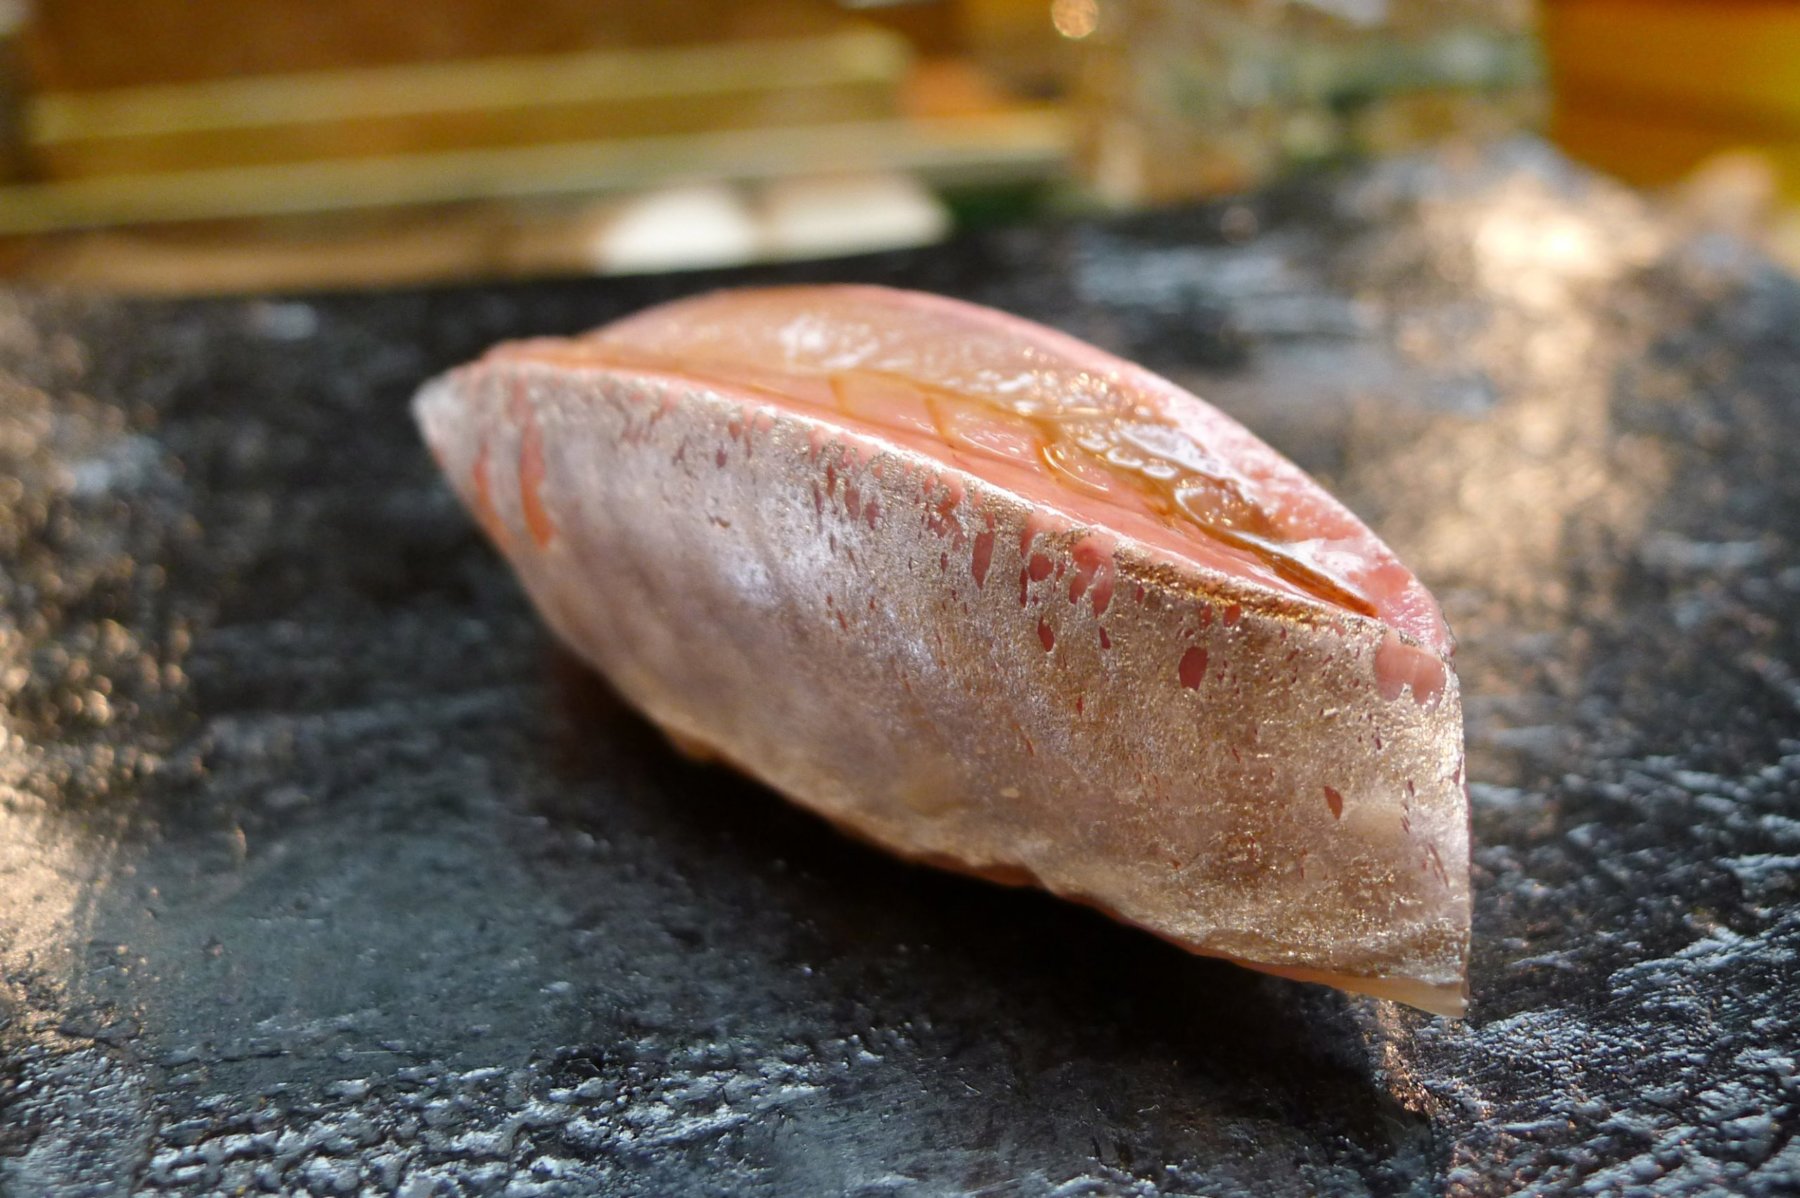 Miyakozushi sushi